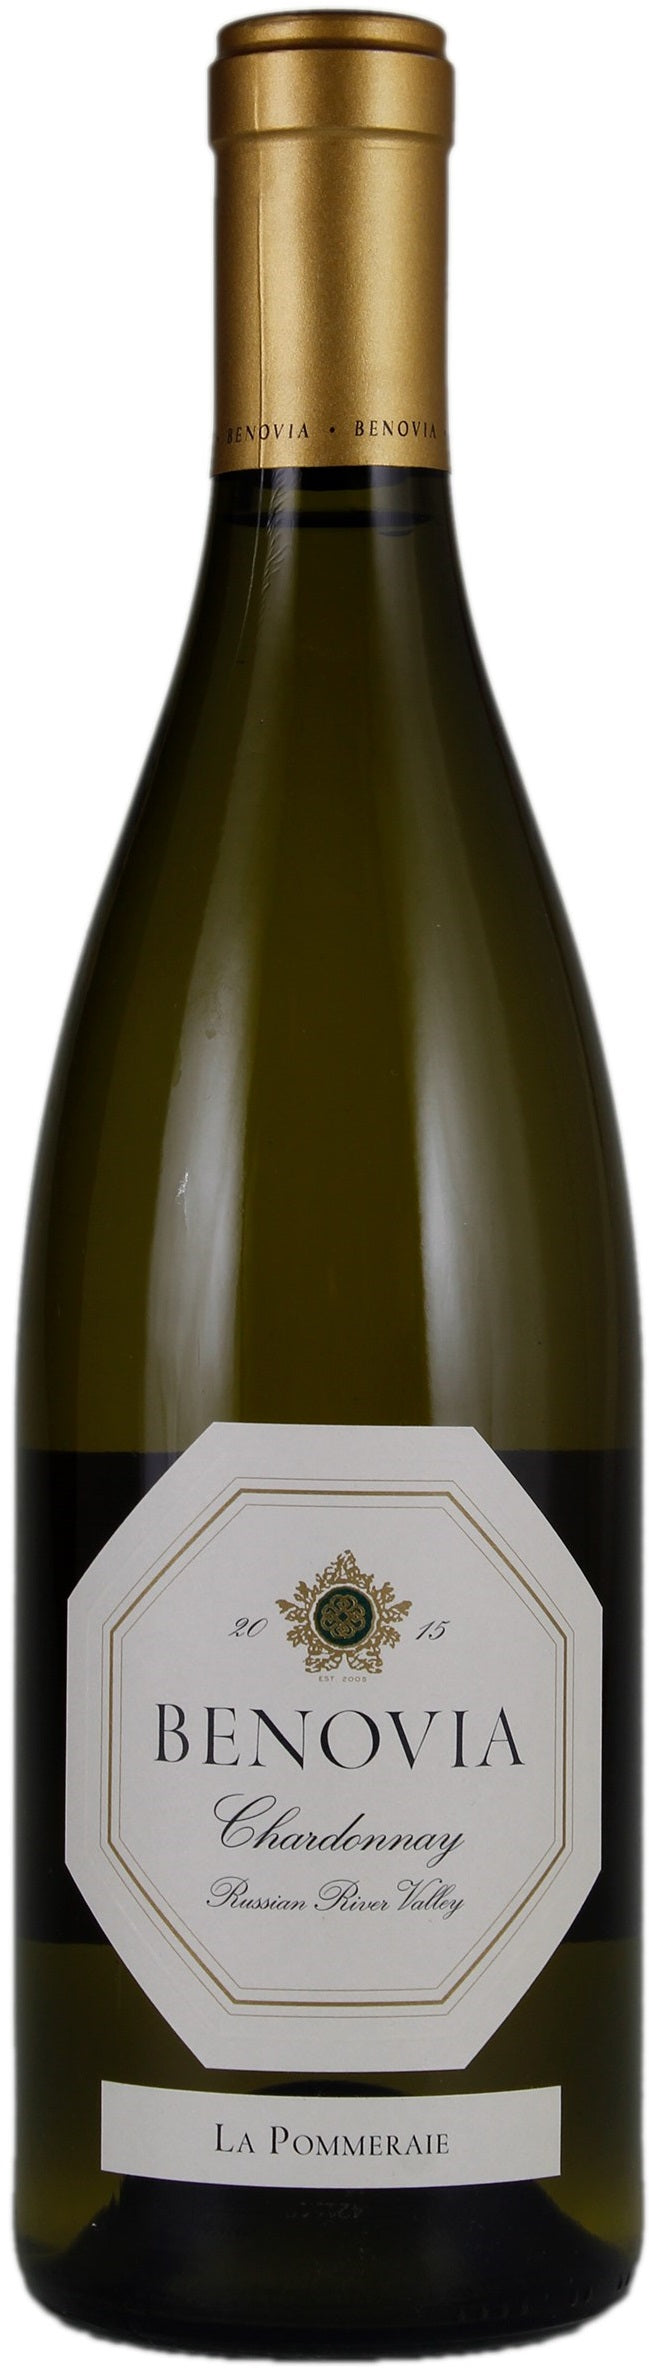 Benovia Chardonnay La Pommeraie 2015